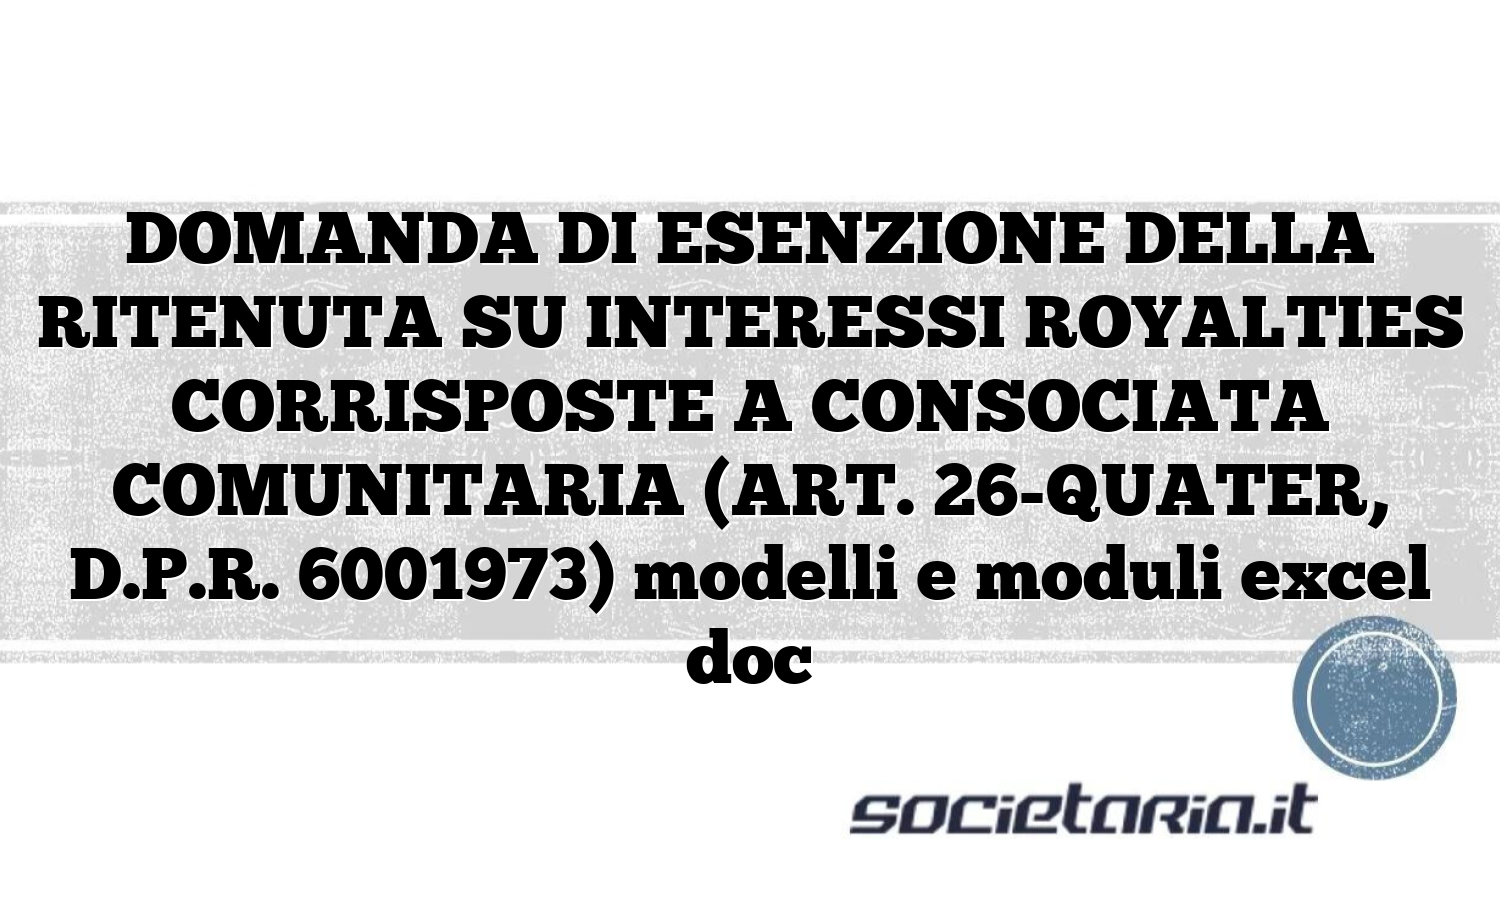 DOMANDA DI ESENZIONE DELLA RITENUTA SU INTERESSI ROYALTIES CORRISPOSTE A CONSOCIATA COMUNITARIA (ART. 26-QUATER, D.P.R. 6001973) modelli e moduli excel doc